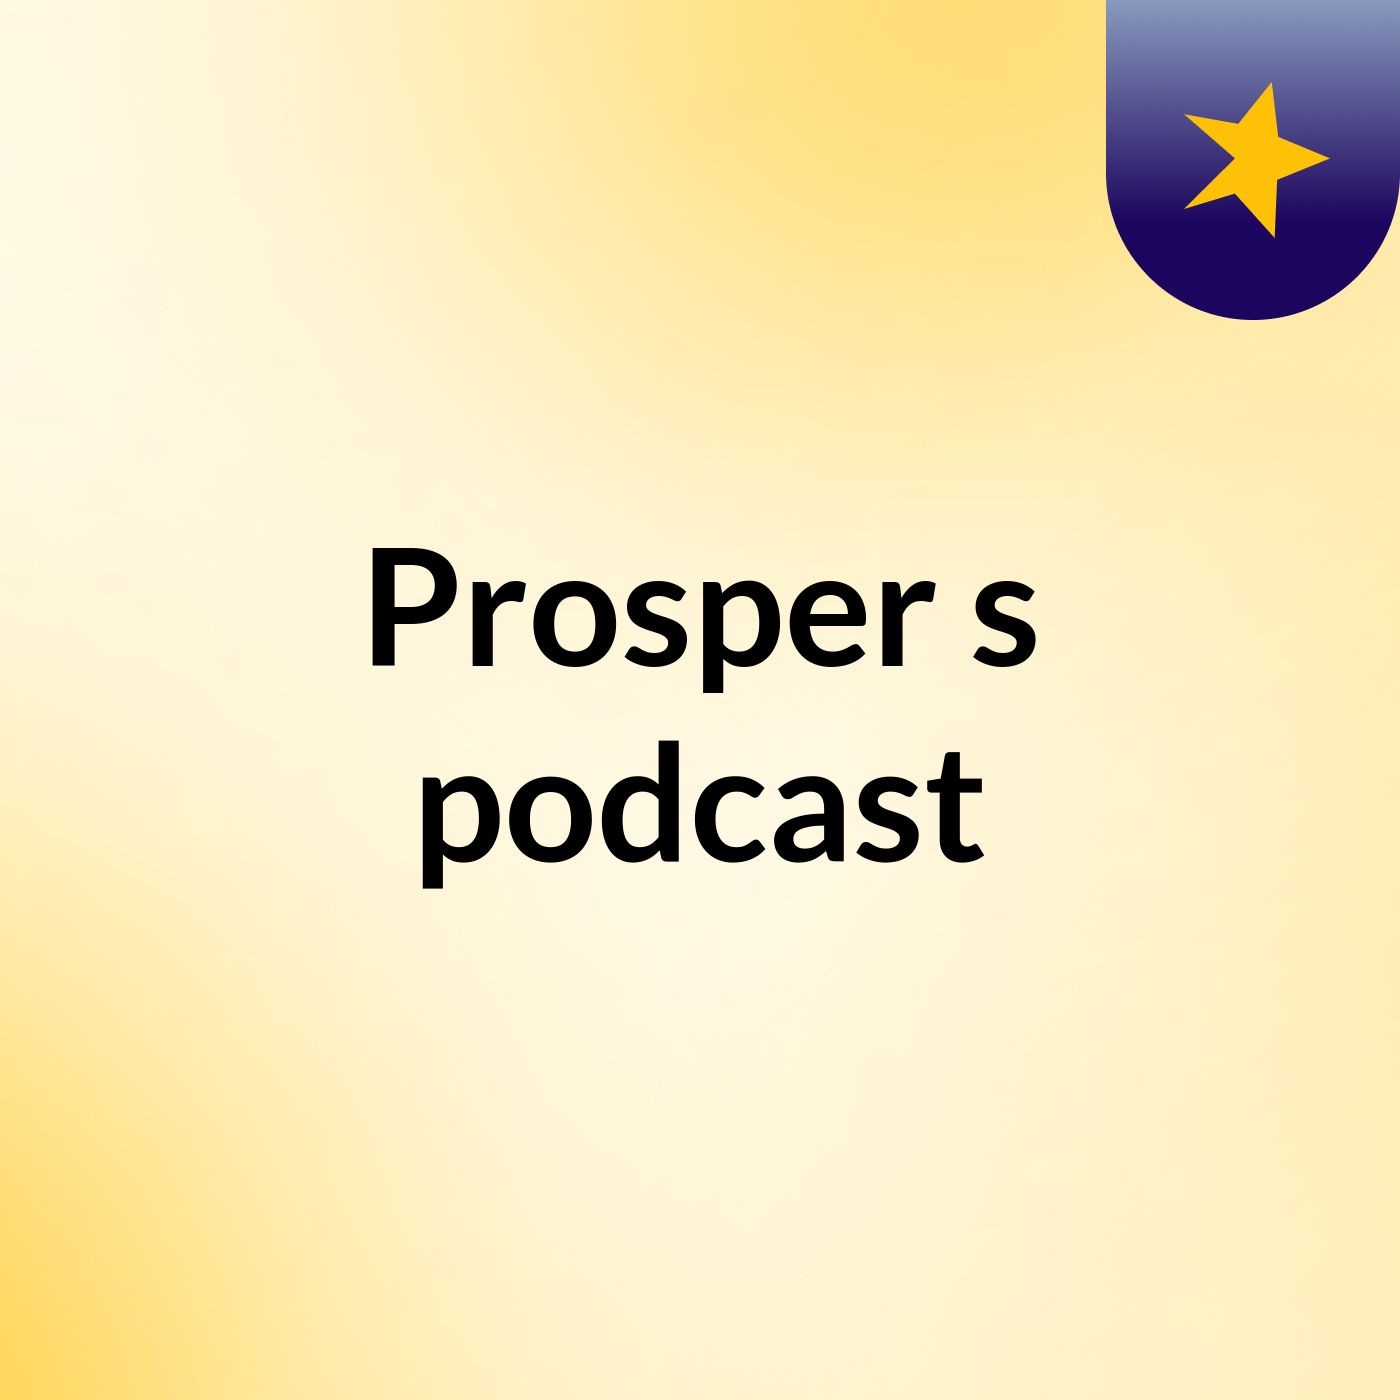 Prosper's podcast